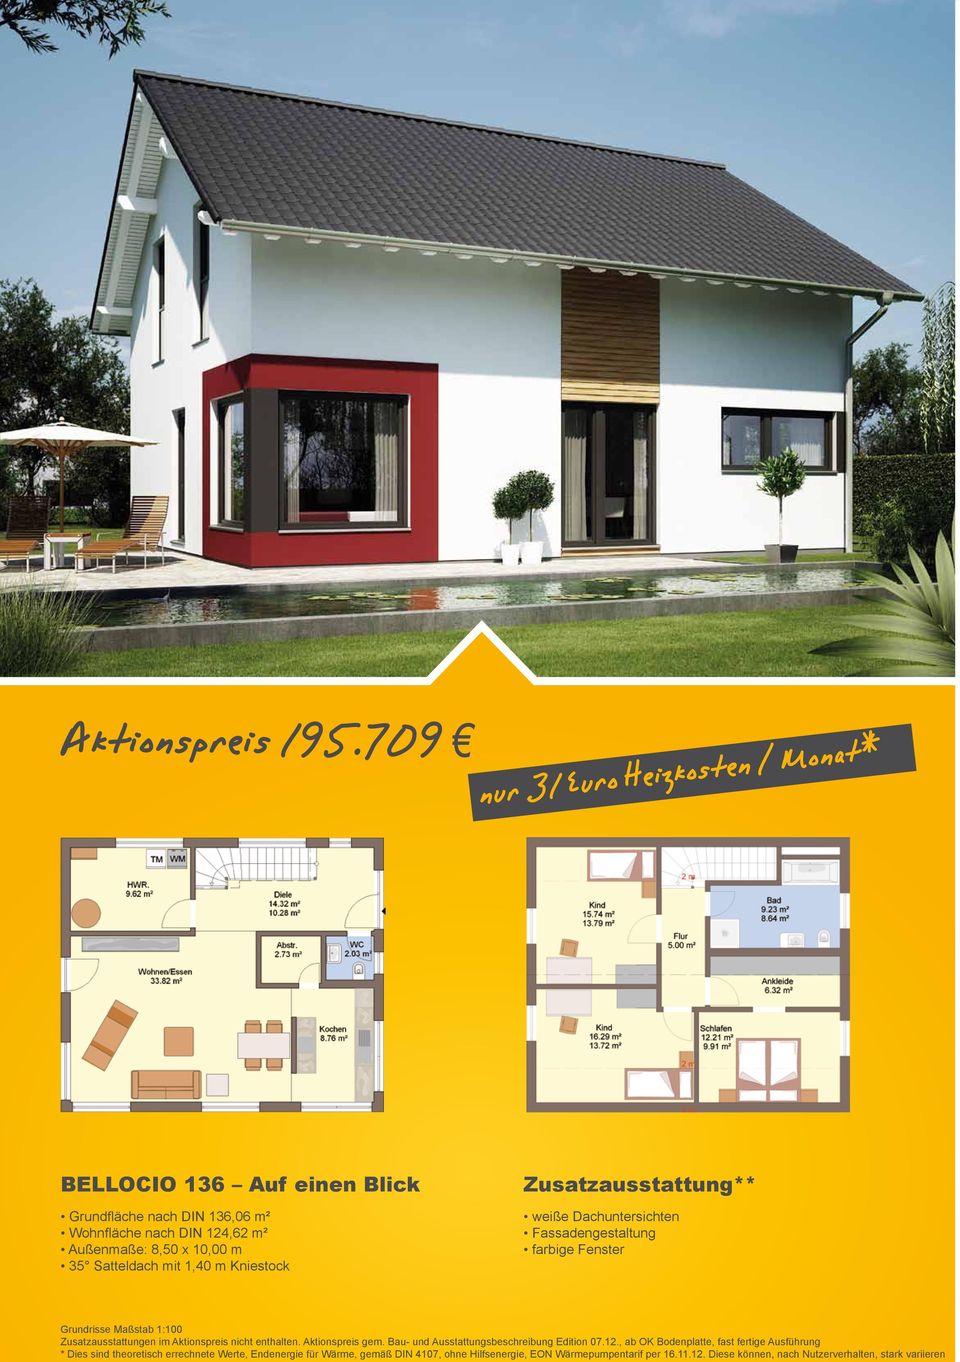 Wohnfläche nach DIN 124,62 m² Außenmaße: 8,50 x 10,00 m 35 Satteldach mit 1,40 m Kniestock ** *